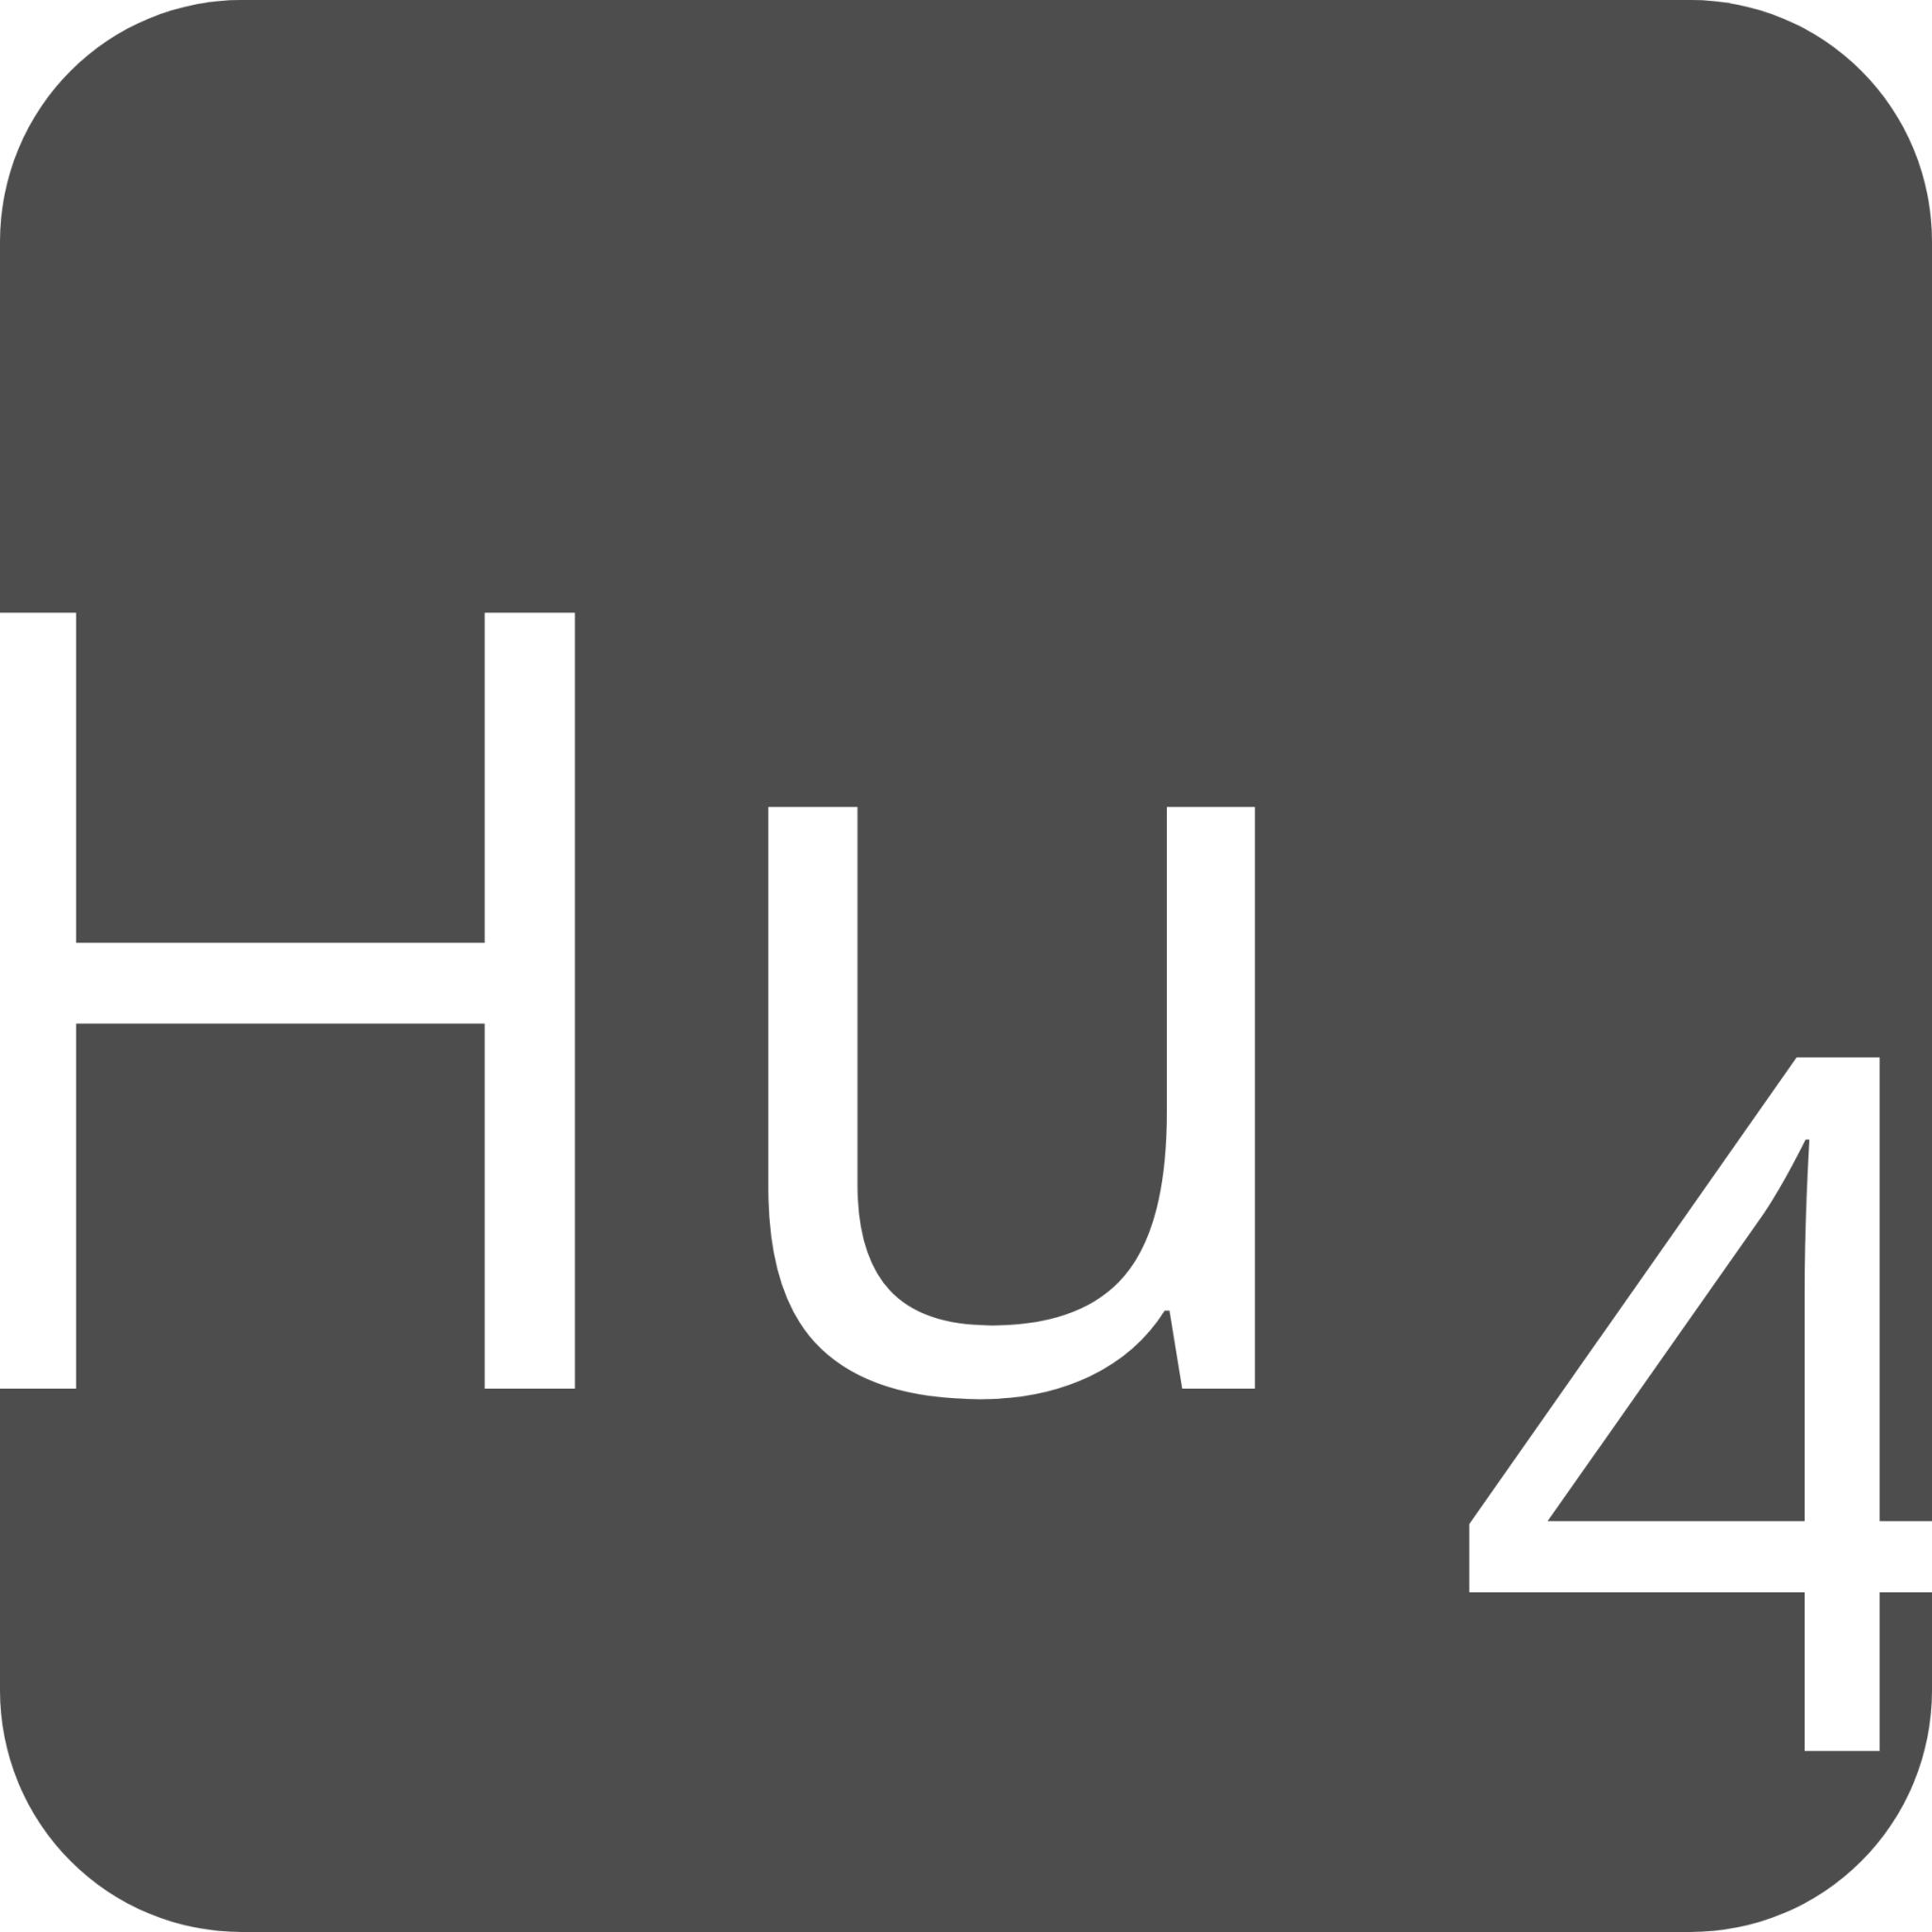 indicator keyboard Hu 4 icon